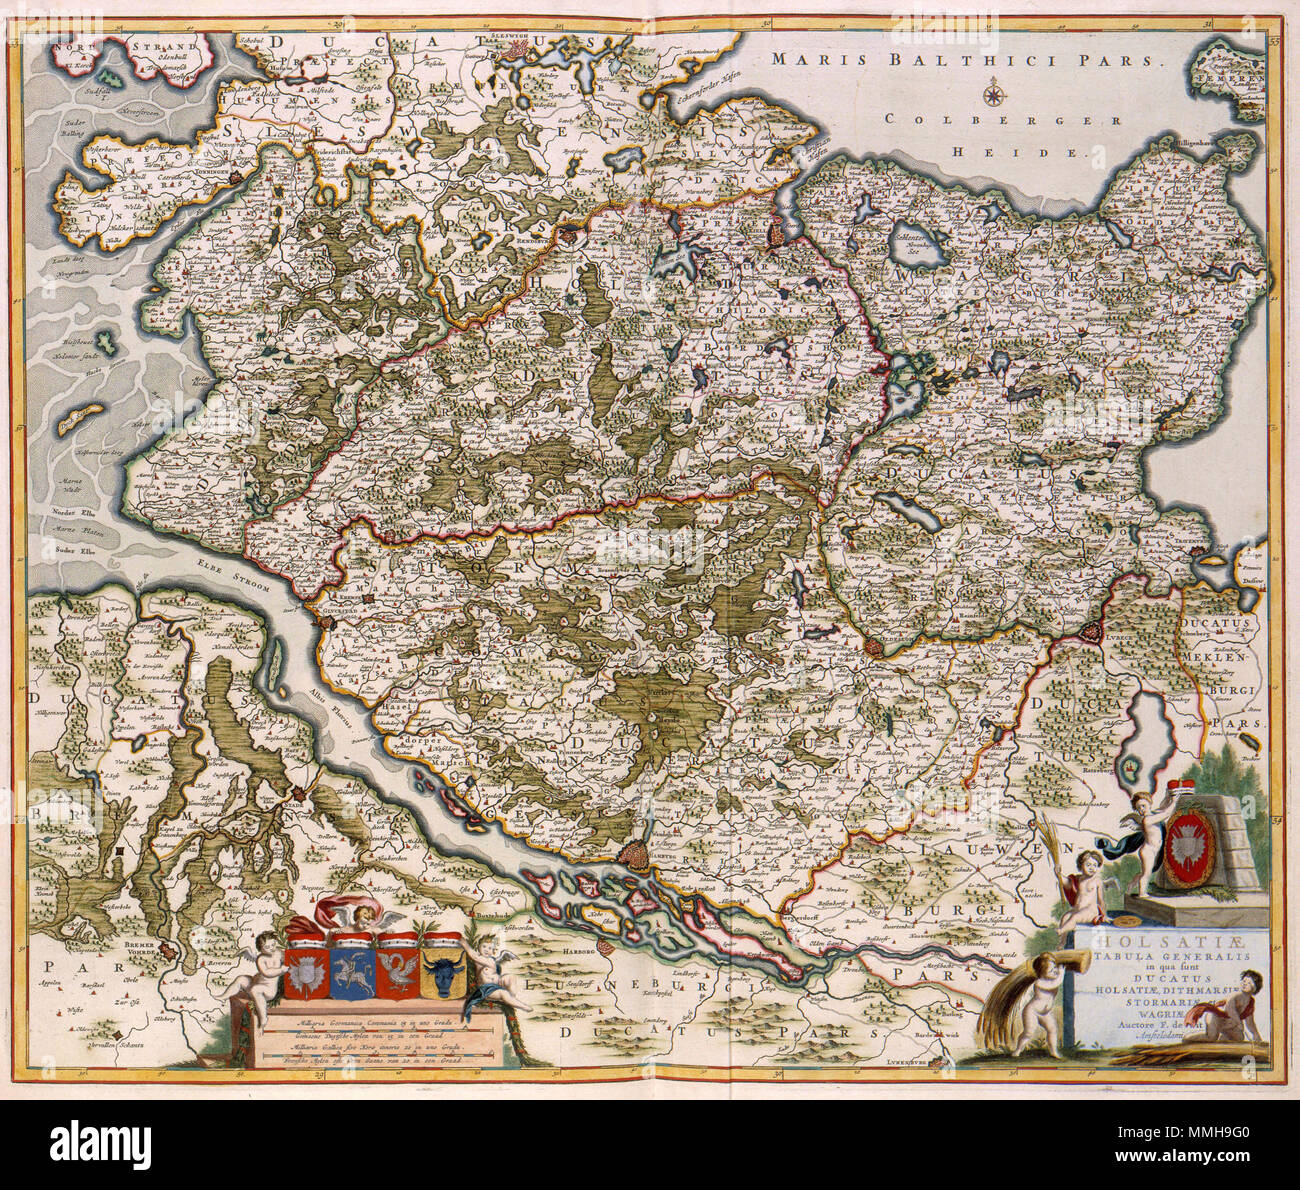 .  Nederlands: De Deense wiskundige Johannes Mejer (1606-1674) werkte vanaf 1638 aan de samenstelling van een kaart van Sleeswijk-Holstein, dat toen voor een groot deel Deense grondgebied was. De resultaten van dat werk - een atlas met 43 detailkaarten van Sleeswijk-Holstein - werd in 1652 door Caspar Dankwerth gepubliceerd. Omdat de topografische opname van Sleeswijk-Holstein als de beste van zijn tijd gold, was het dan ook weinig verrassend dat Joan Blaeu (1598-1673) de belangrijkste kaarten uit deze reeks in zijn Atlas Maior van 1662 opnam. Ook daarna waren deze kaarten bijzonder populair.  Stock Photo